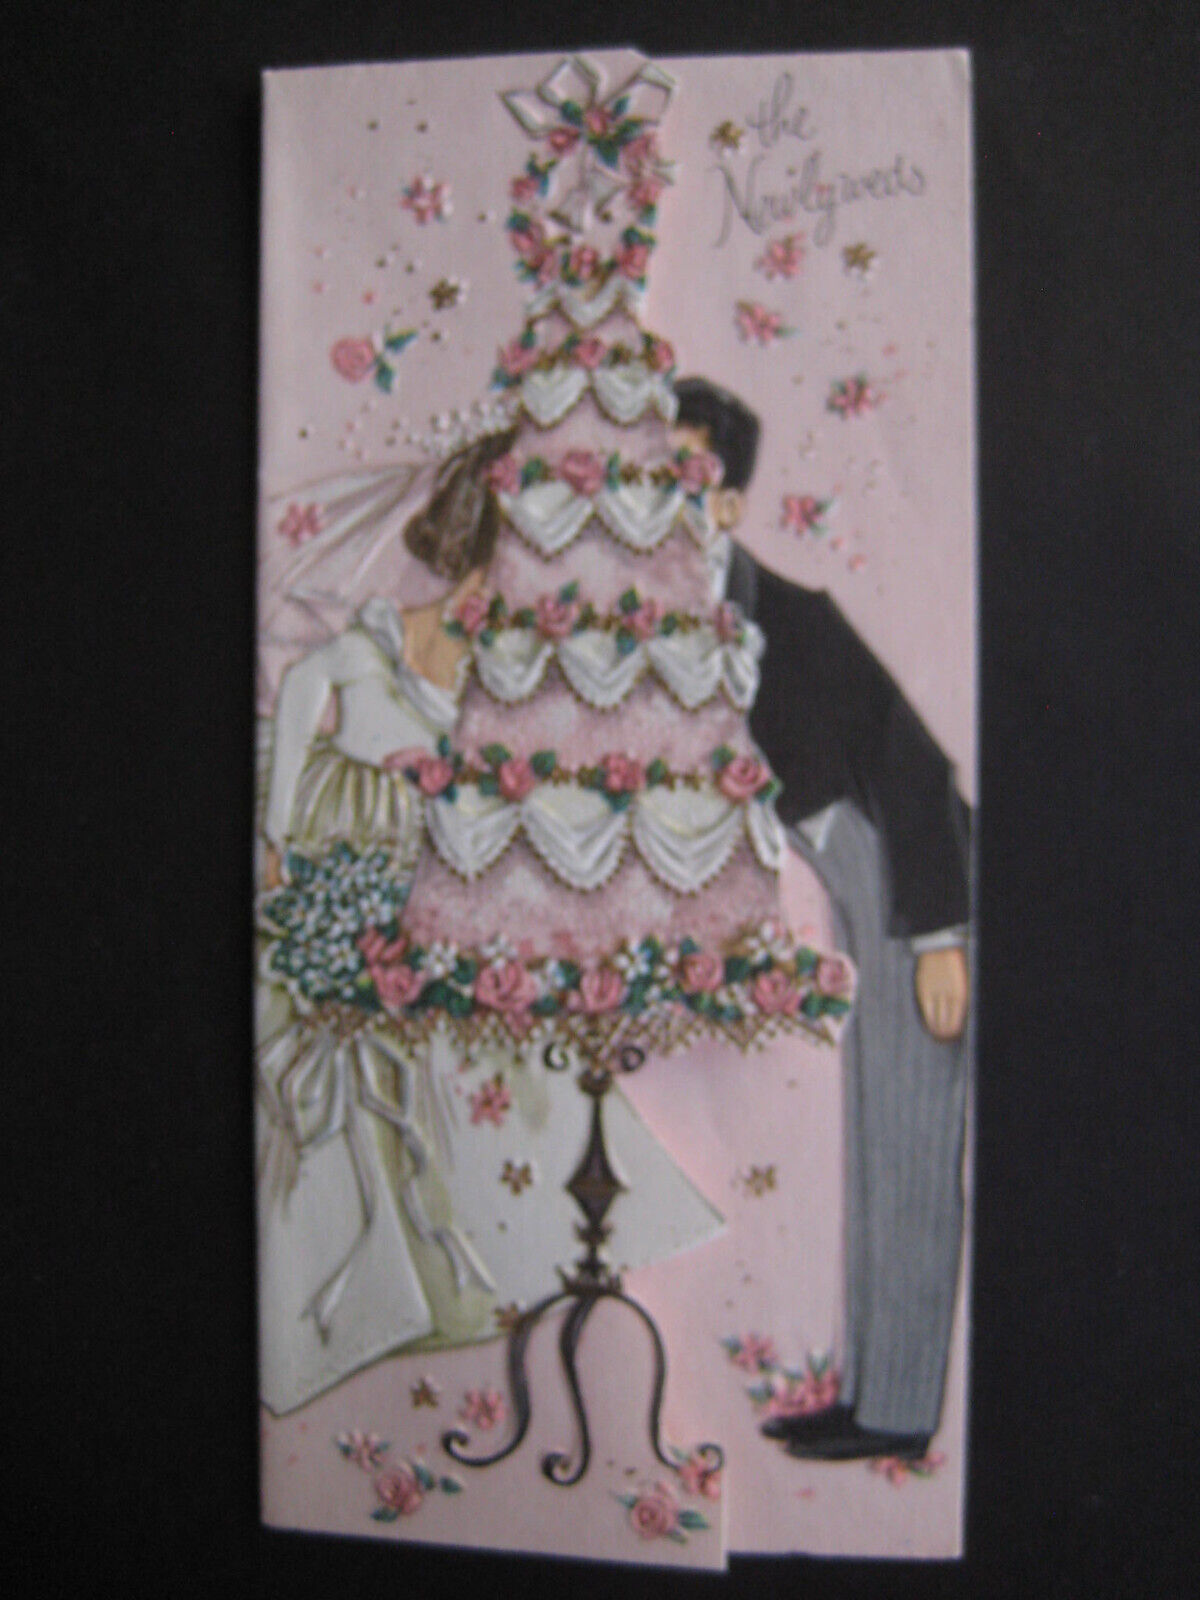 1960s vintage greeting card WEDDING Bride & Groom Behind the Wedding Cake